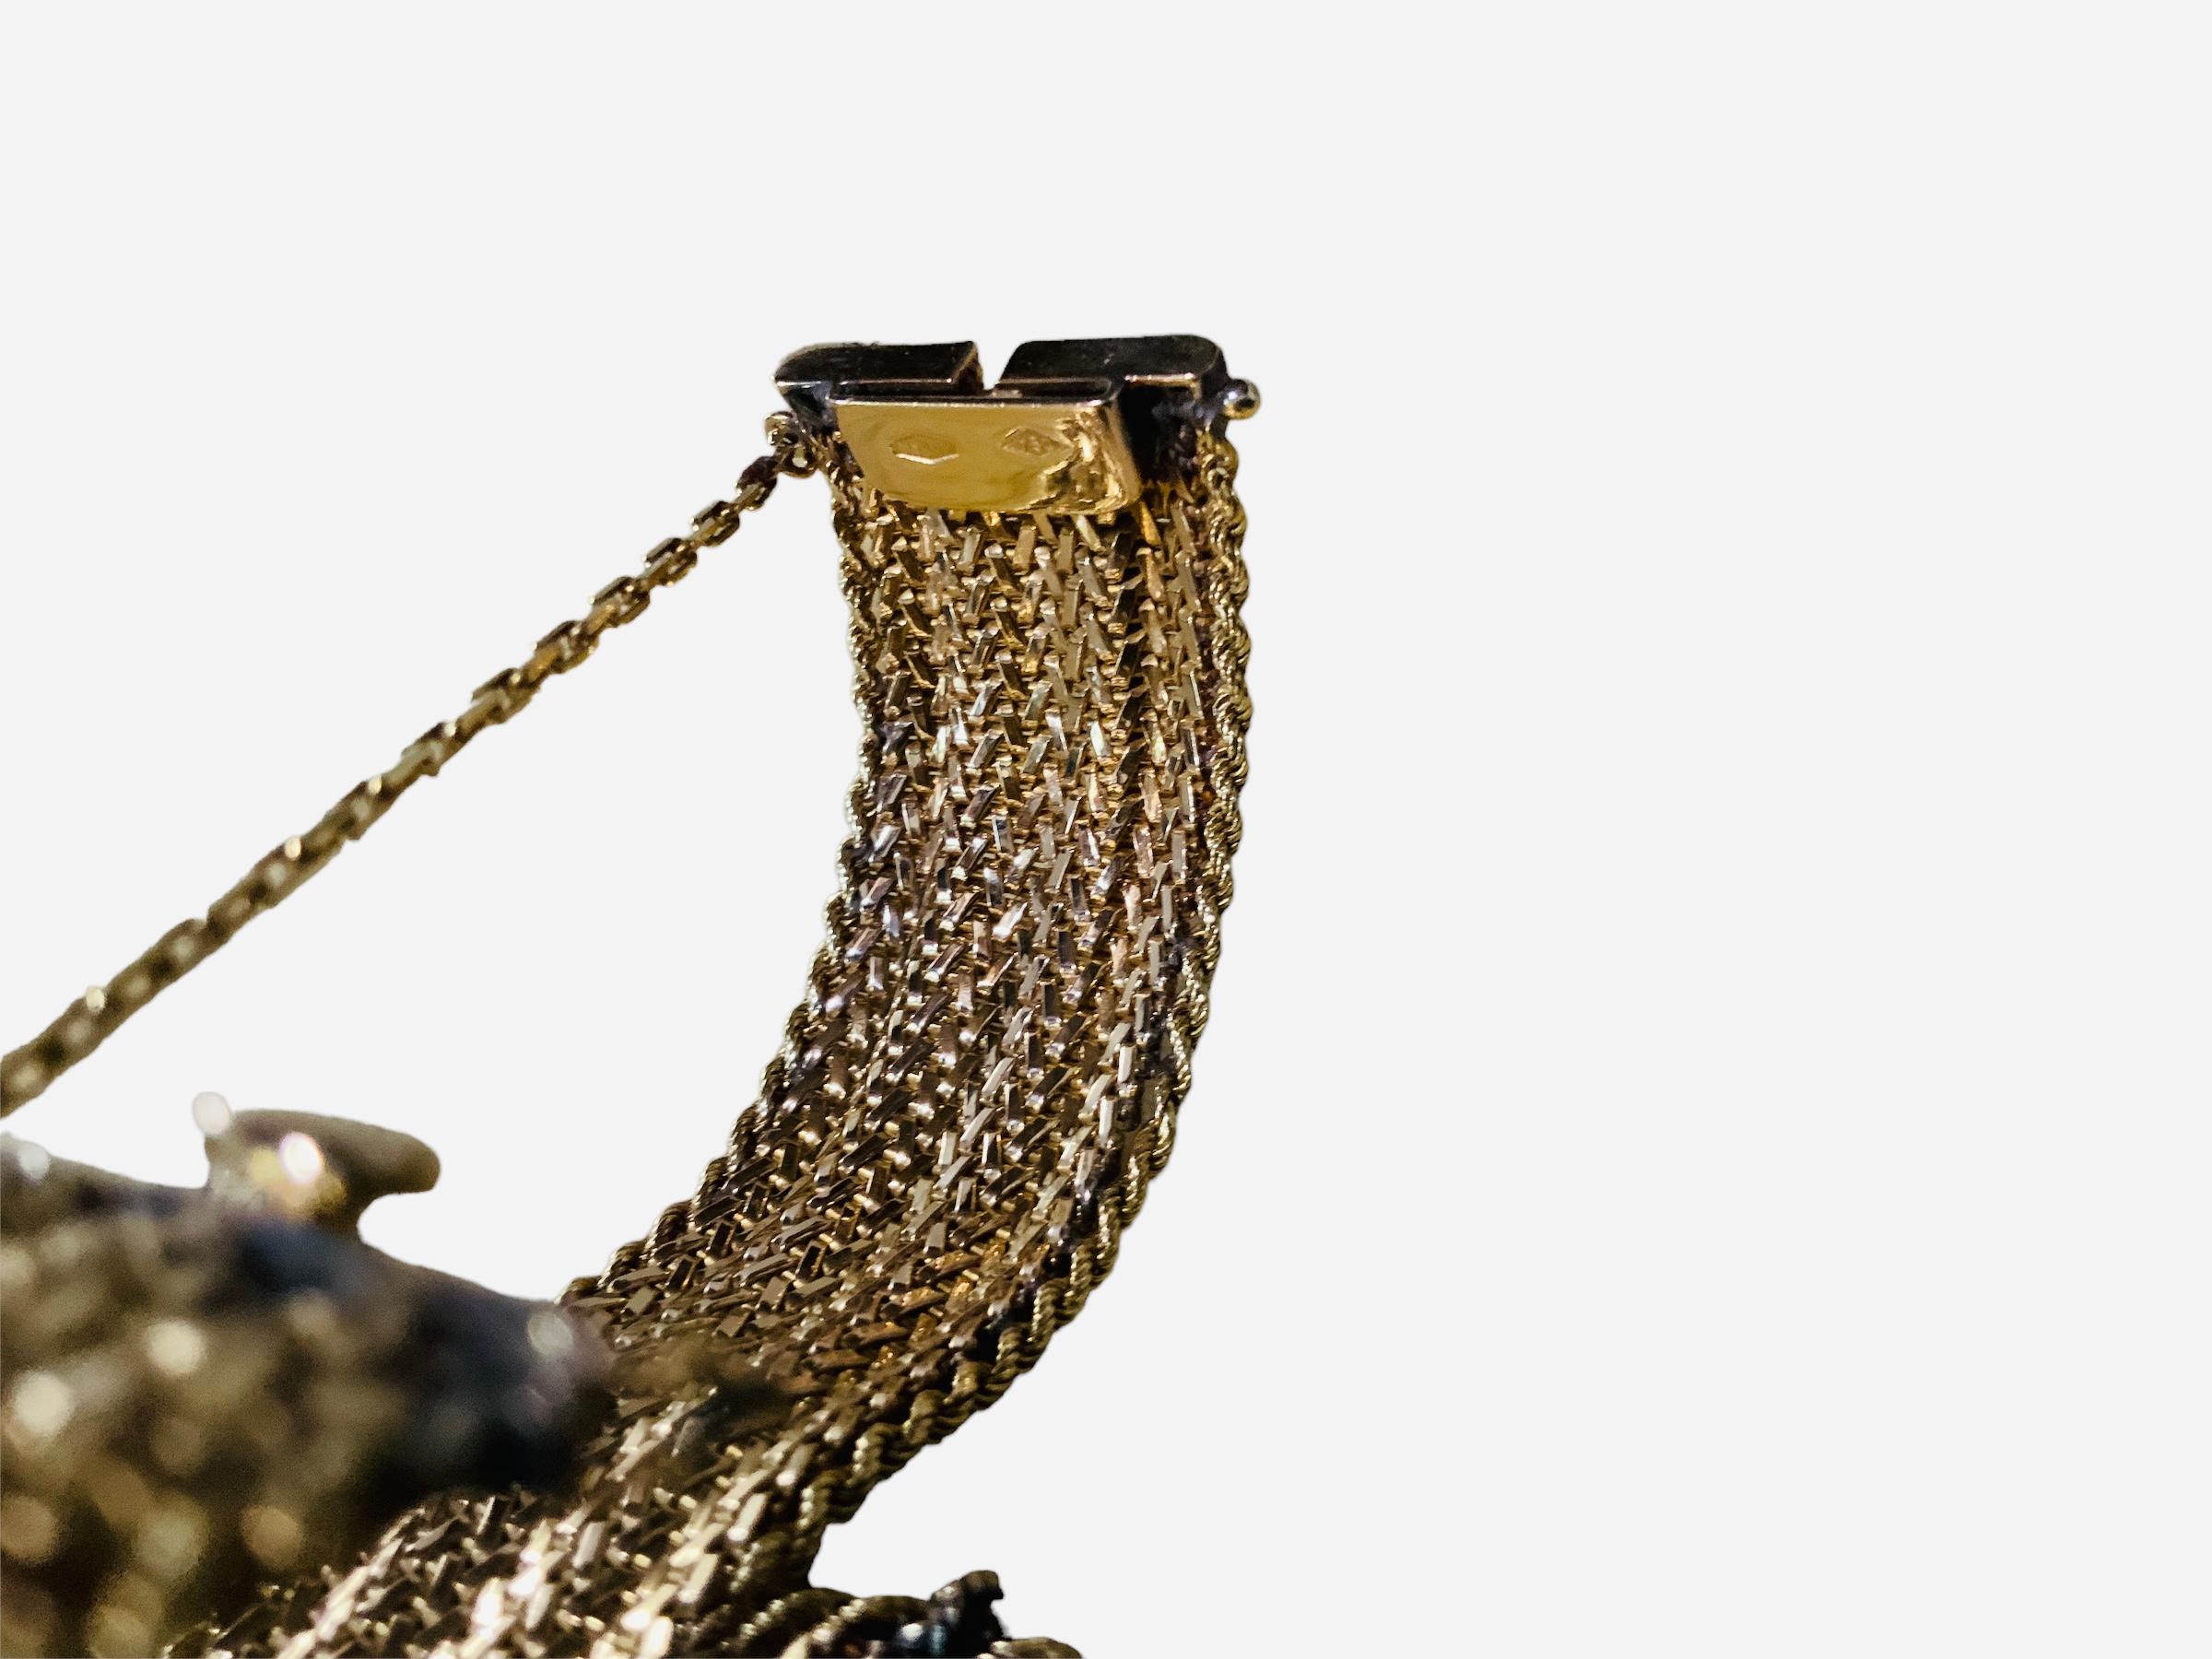 18k gold mesh bracelet